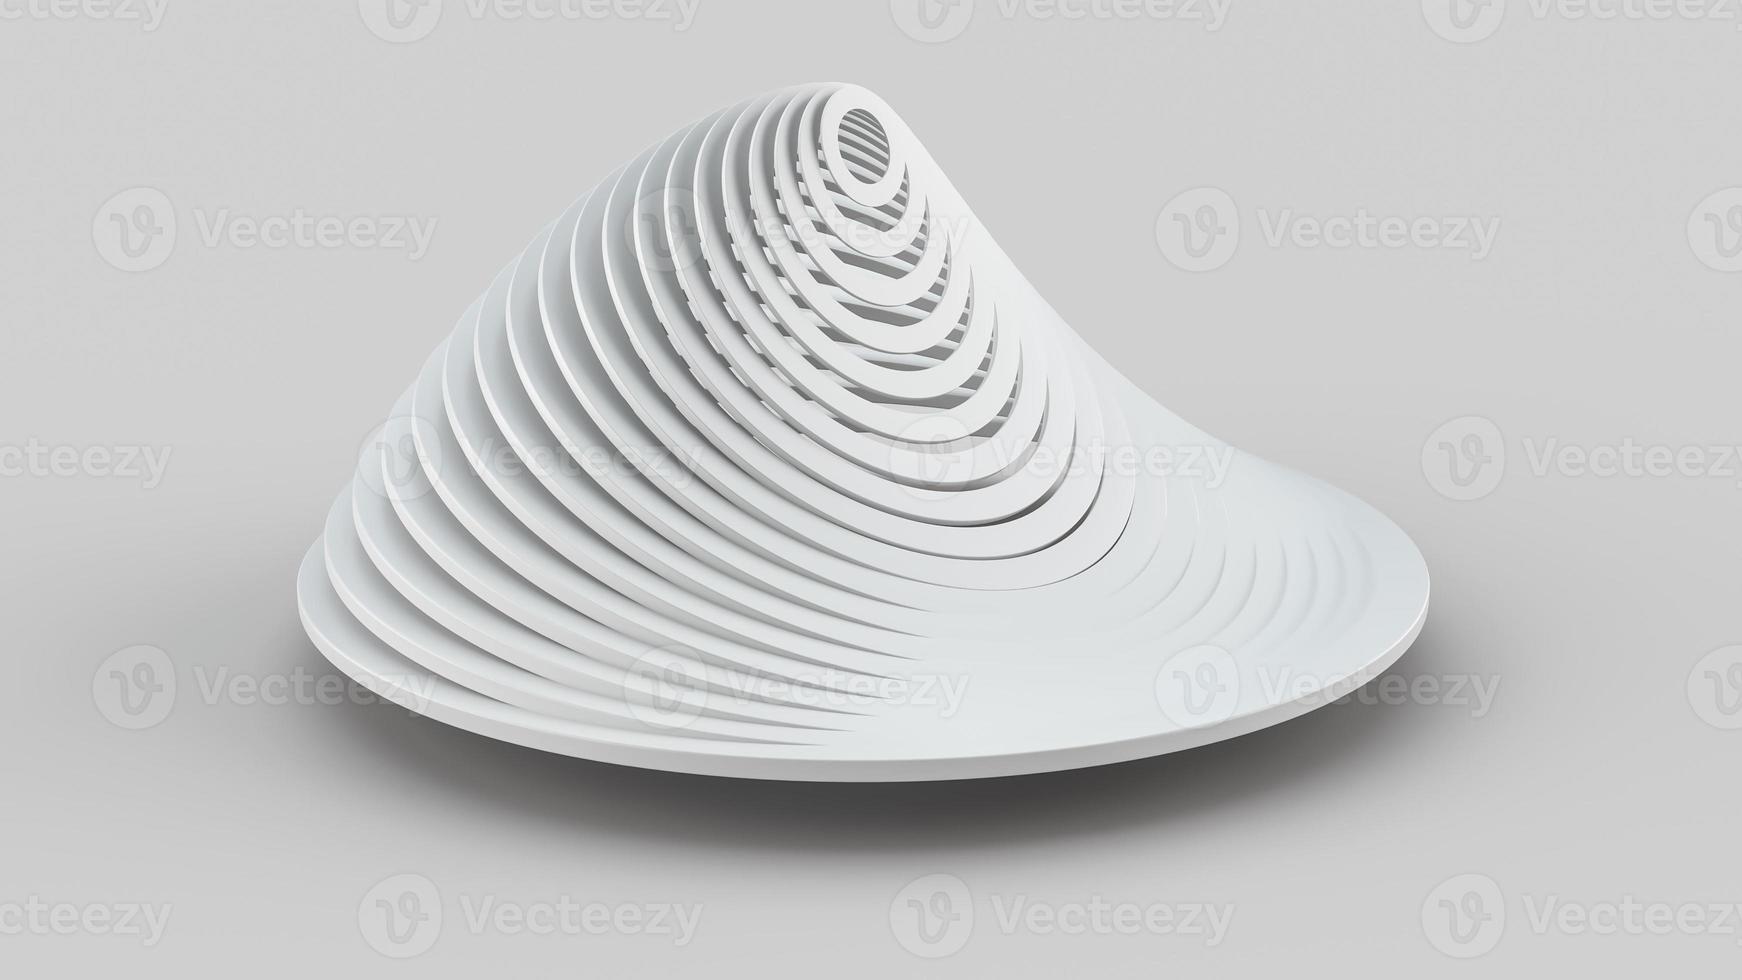 abstracte kunst van surrealistische werveling oneindigheid gedraaide ronde vorm in lichtgrijs mat plastic materiaal witte achtergrond monochroom abstract 3d illustratie foto